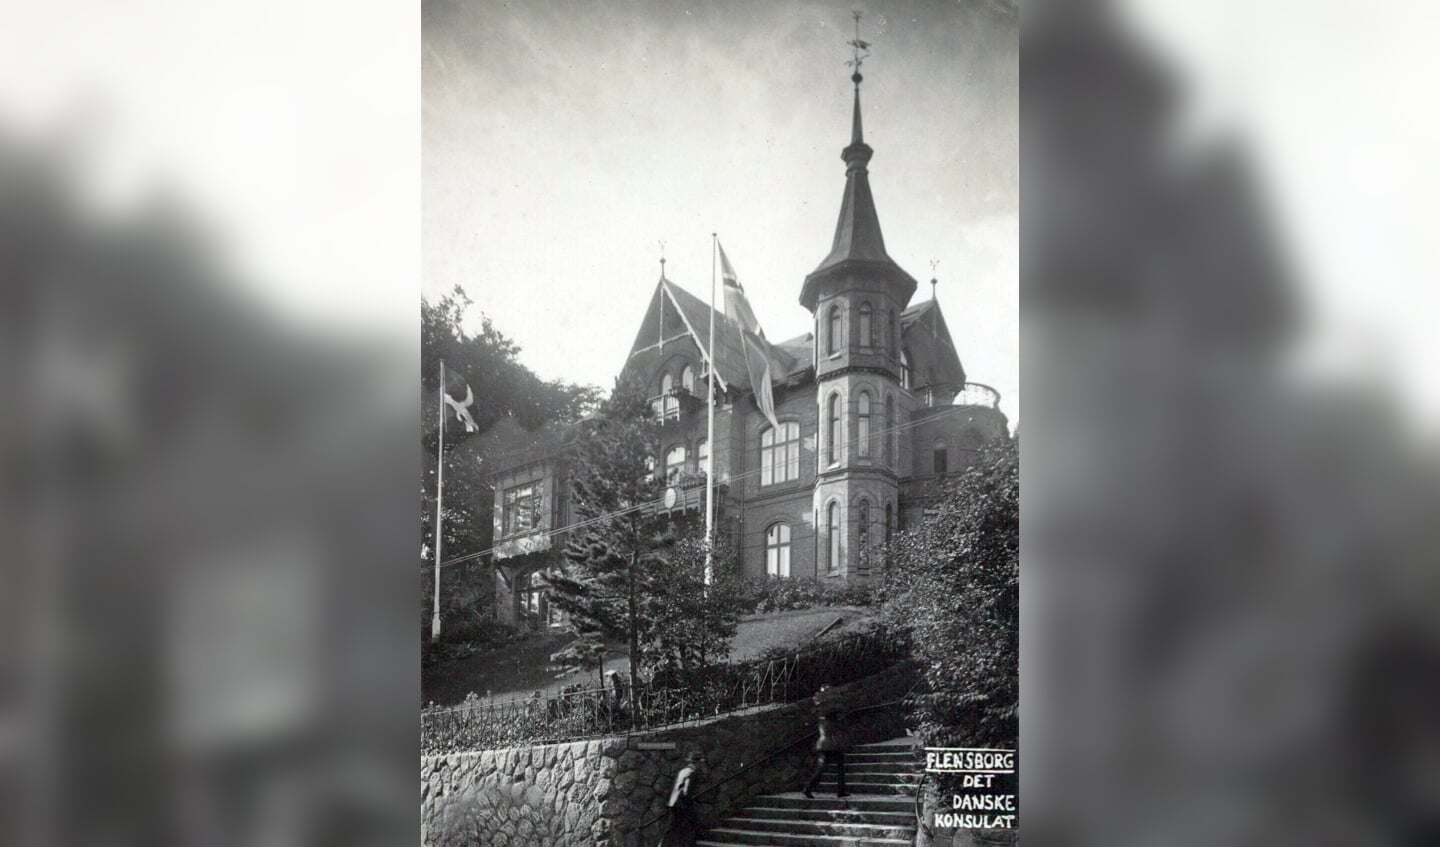 Familien Hübschs villa i Flensborg har i mere end 100 år været Dansk Generalkonsulat. Foto: 